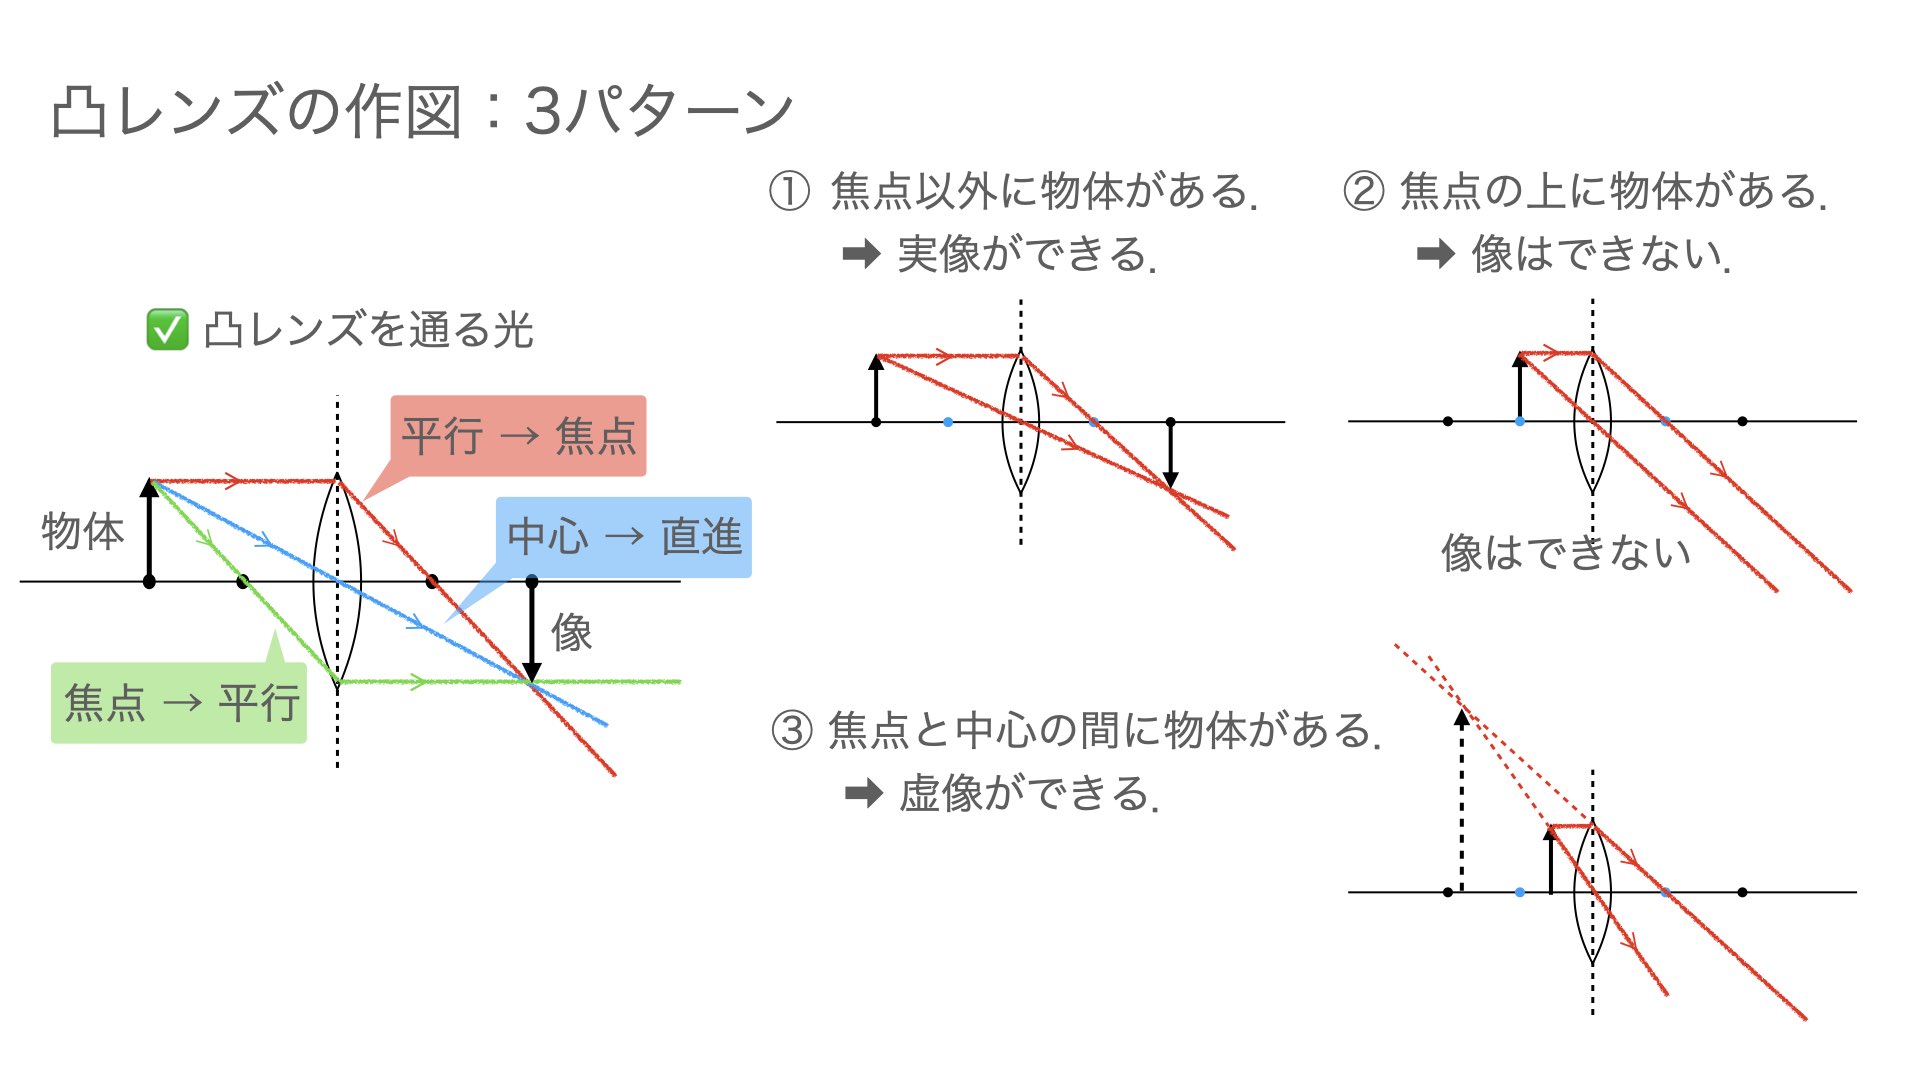 凸レンズを通る光の進み方と凸レンズの作図 3パターン Hiromaru Note